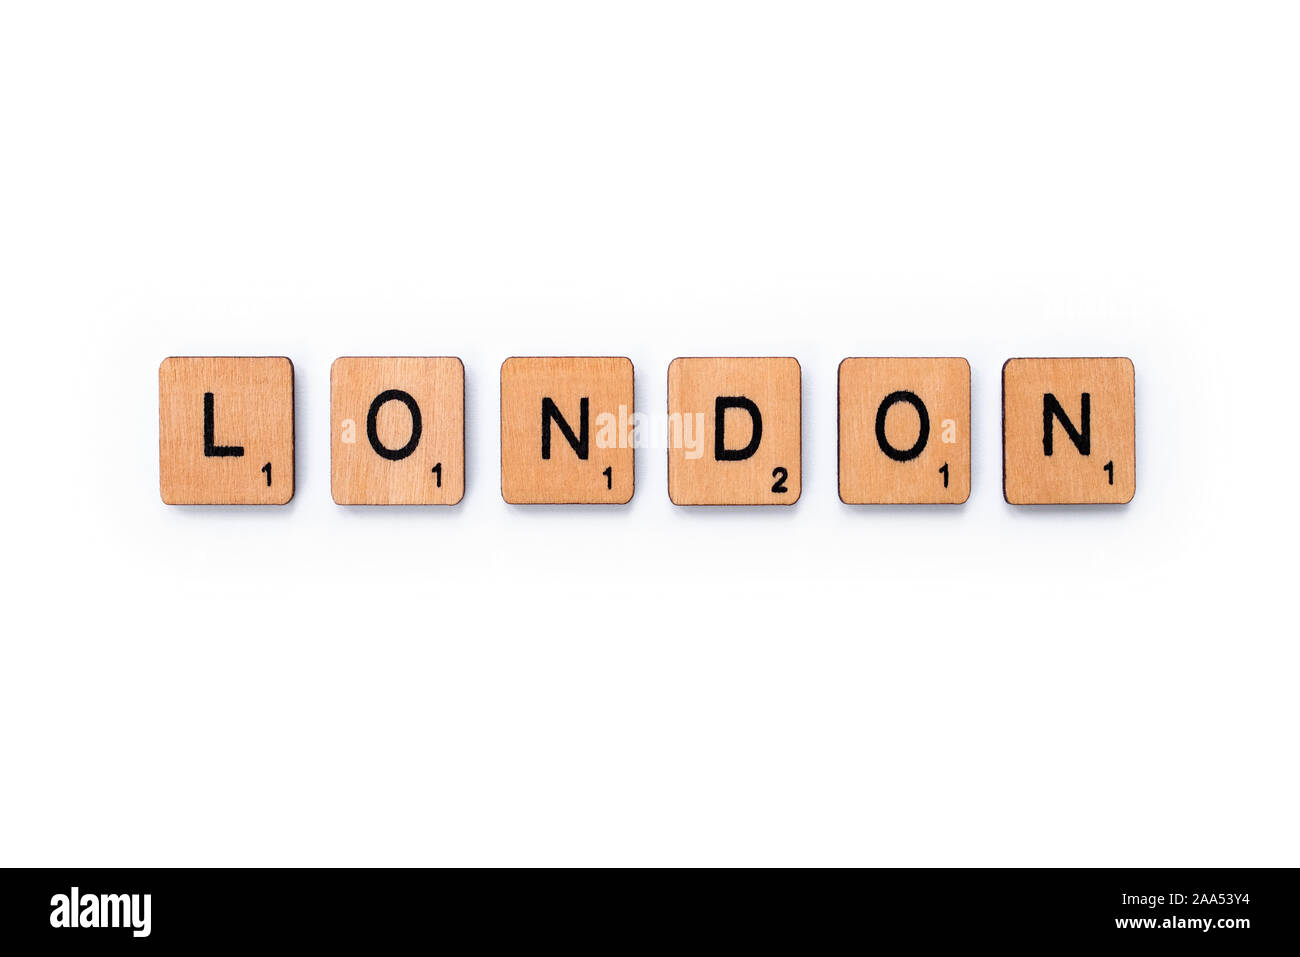 London, UK, 13. Juni 2019: Das Wort LONDON, Dinkel mit hölzernen Buchstabensteine über einem weißen Hintergrund. Stockfoto